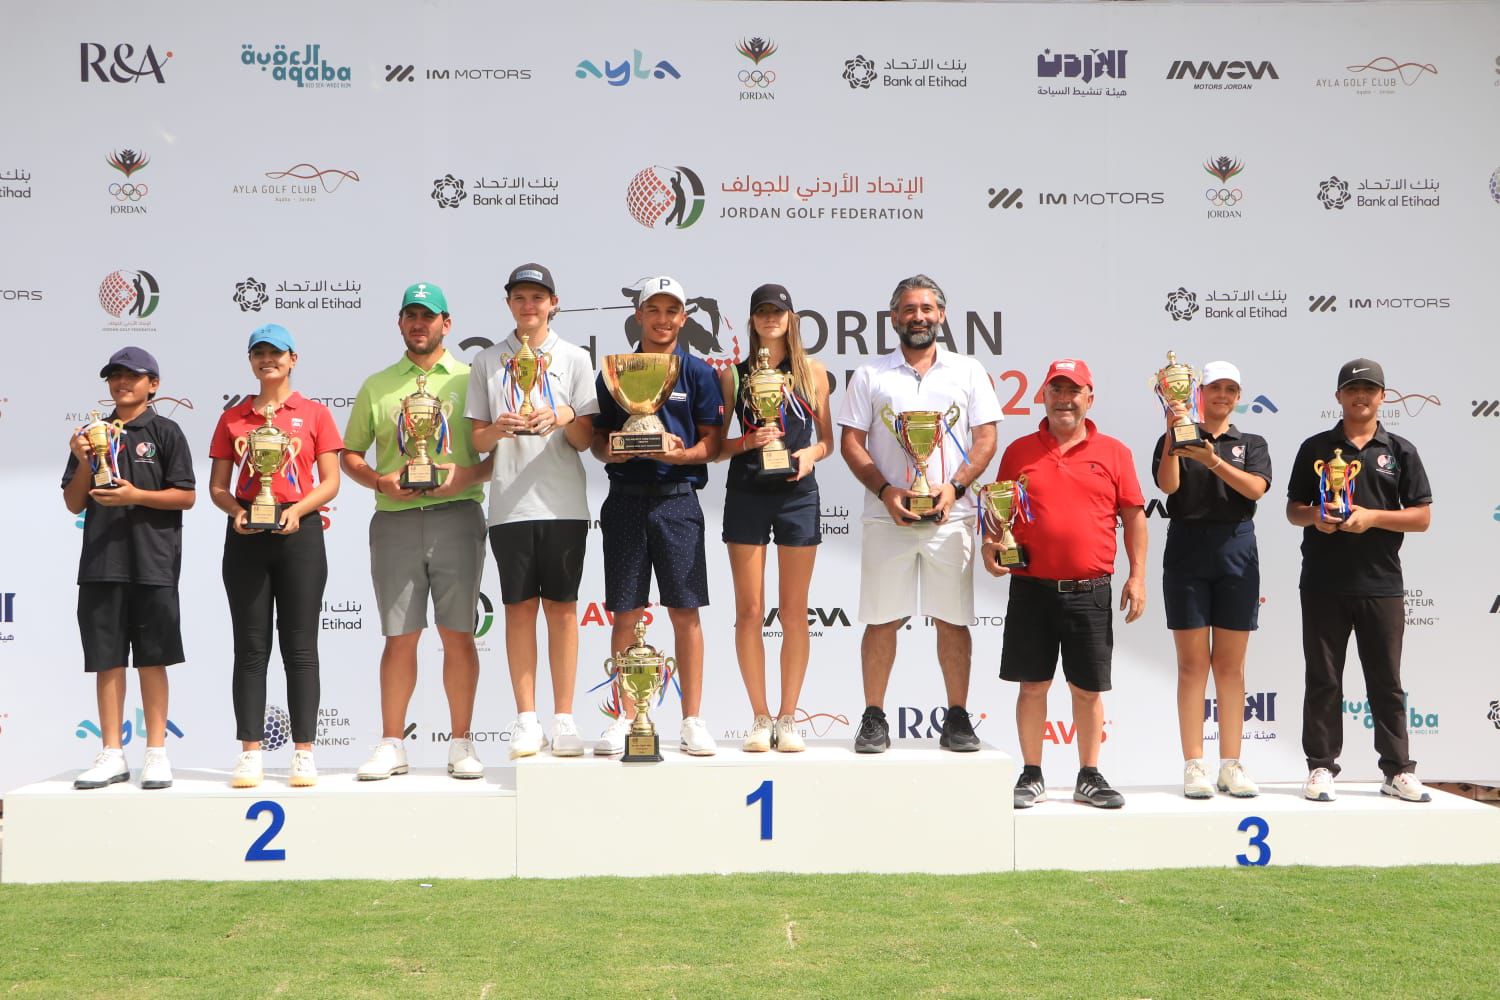 اللاعب التونسي الياس برهومي يظفر بلقب بطولة الأردن المفتوحة للجولف